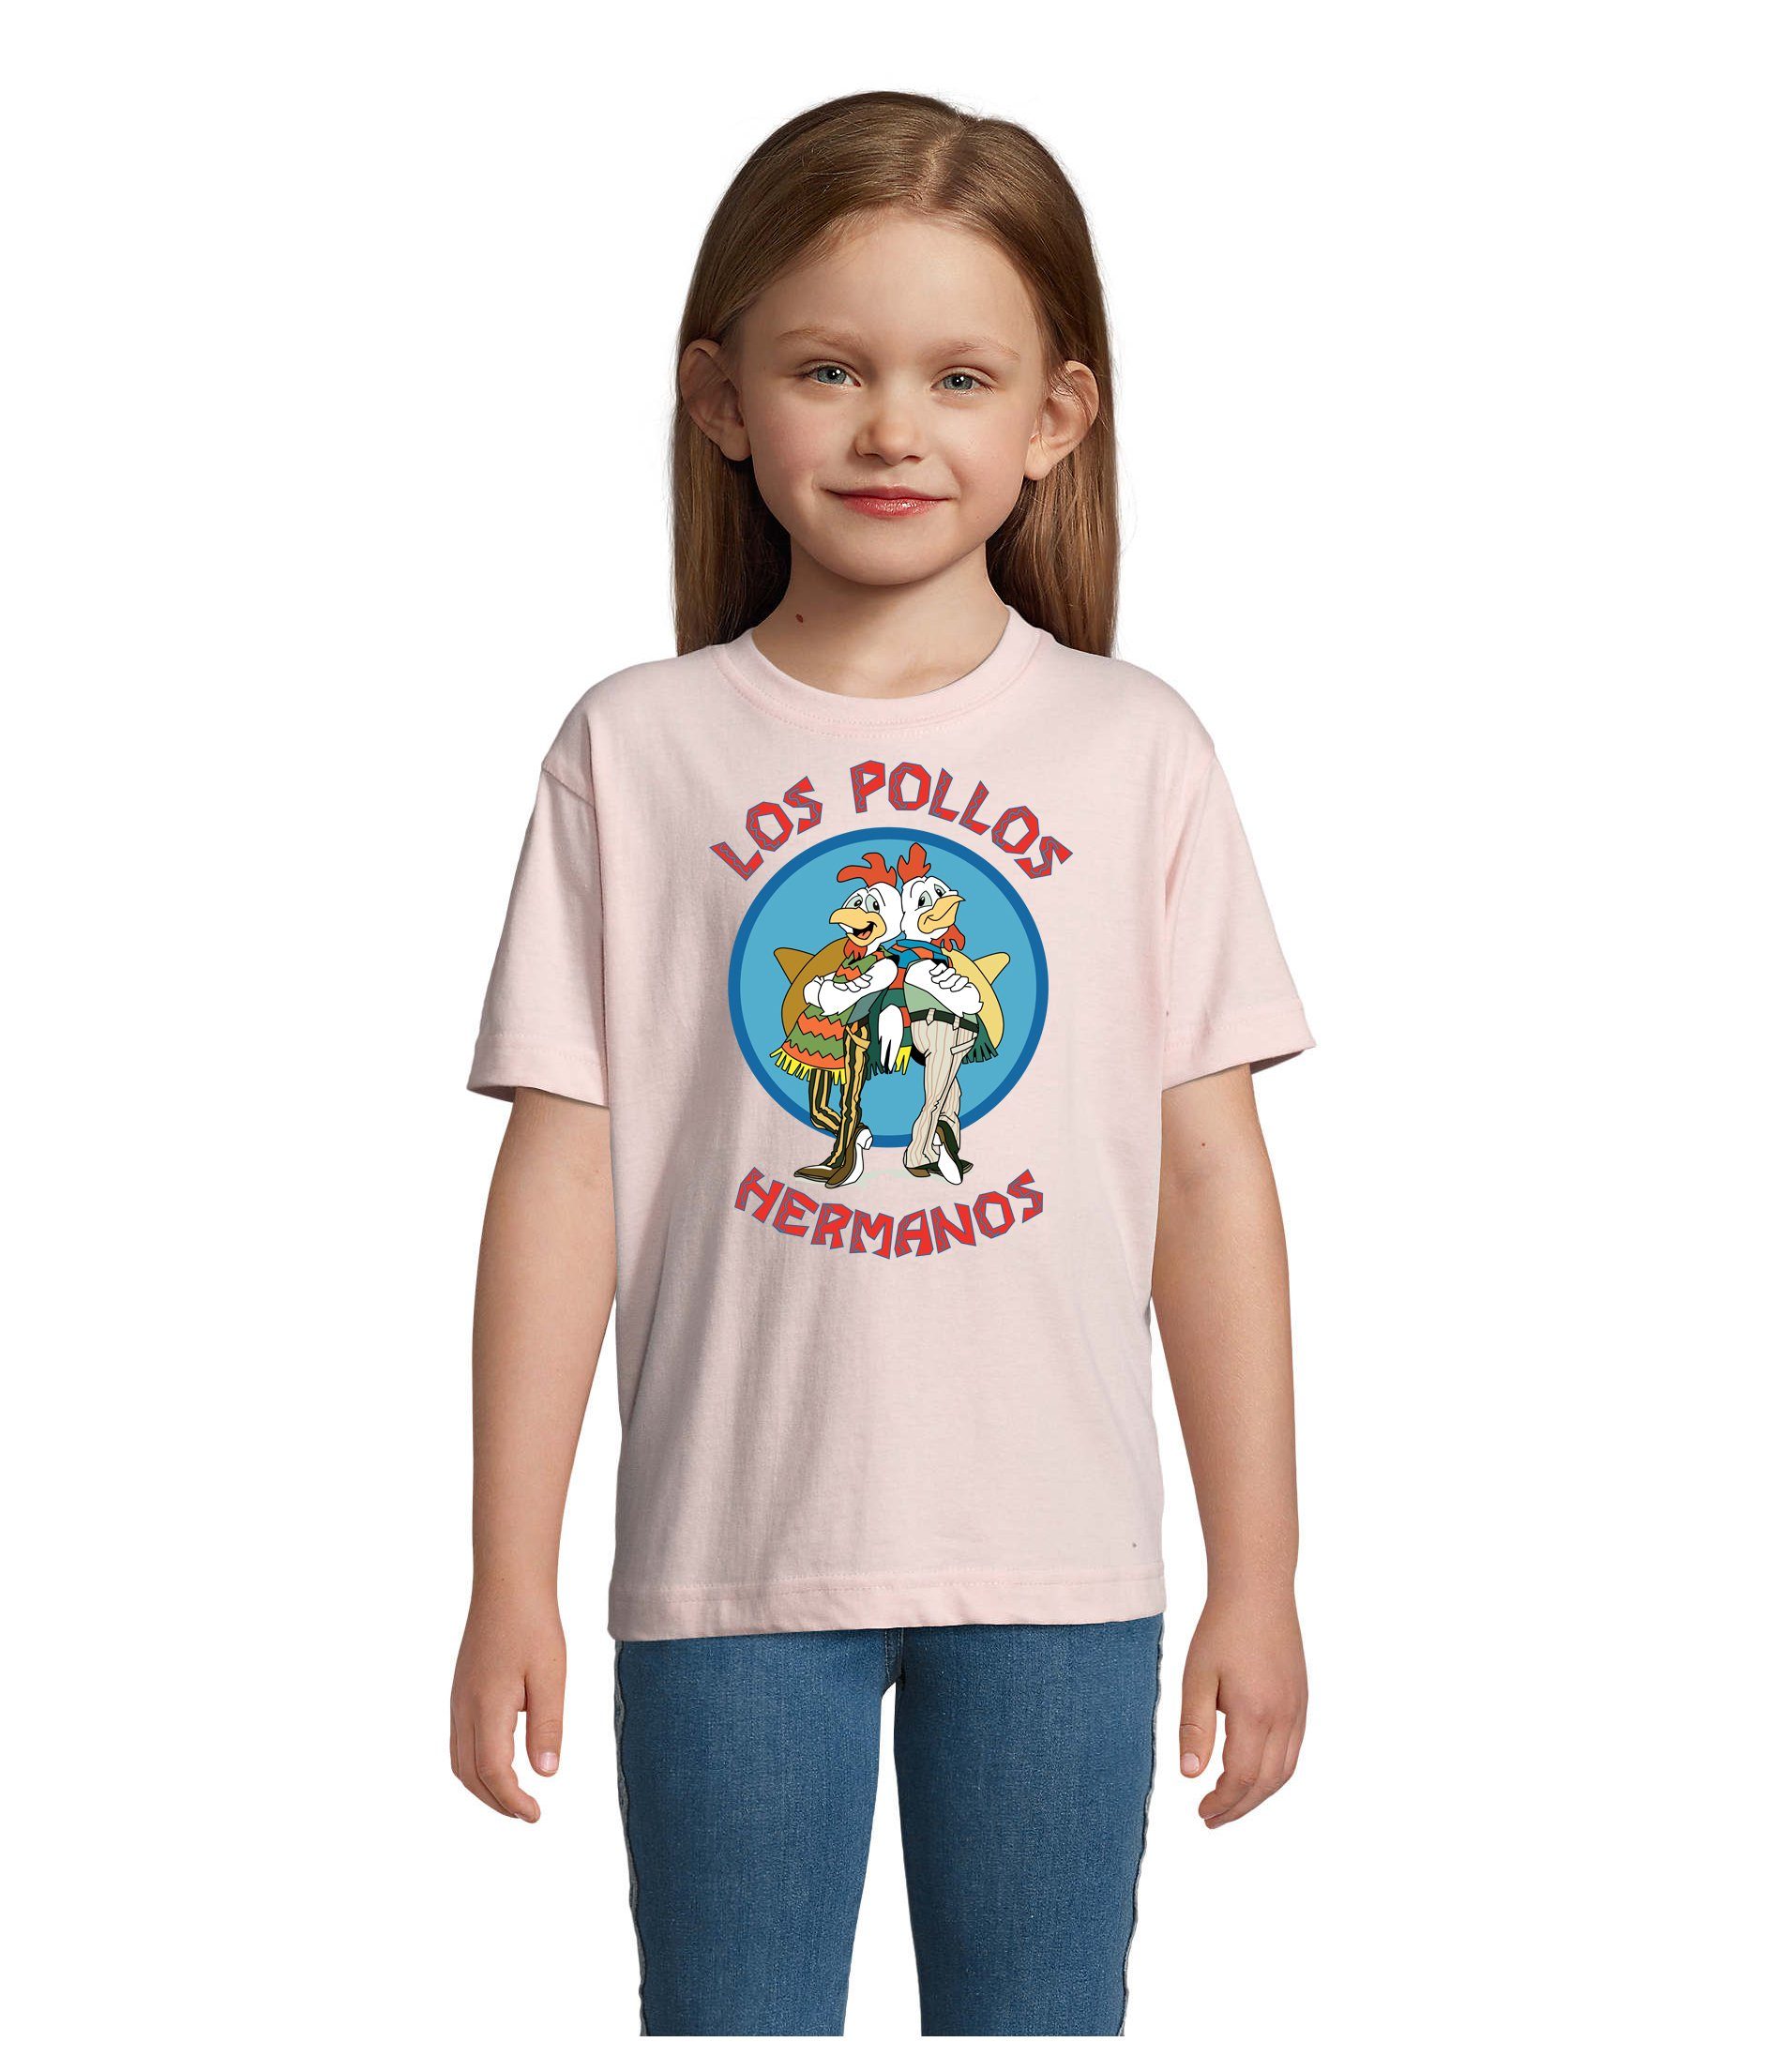 Blondie & Brownie T-Shirt Kinder Jungen & Mädchen Hermanos Hühner Los Pollos in vielen Farben Rosa